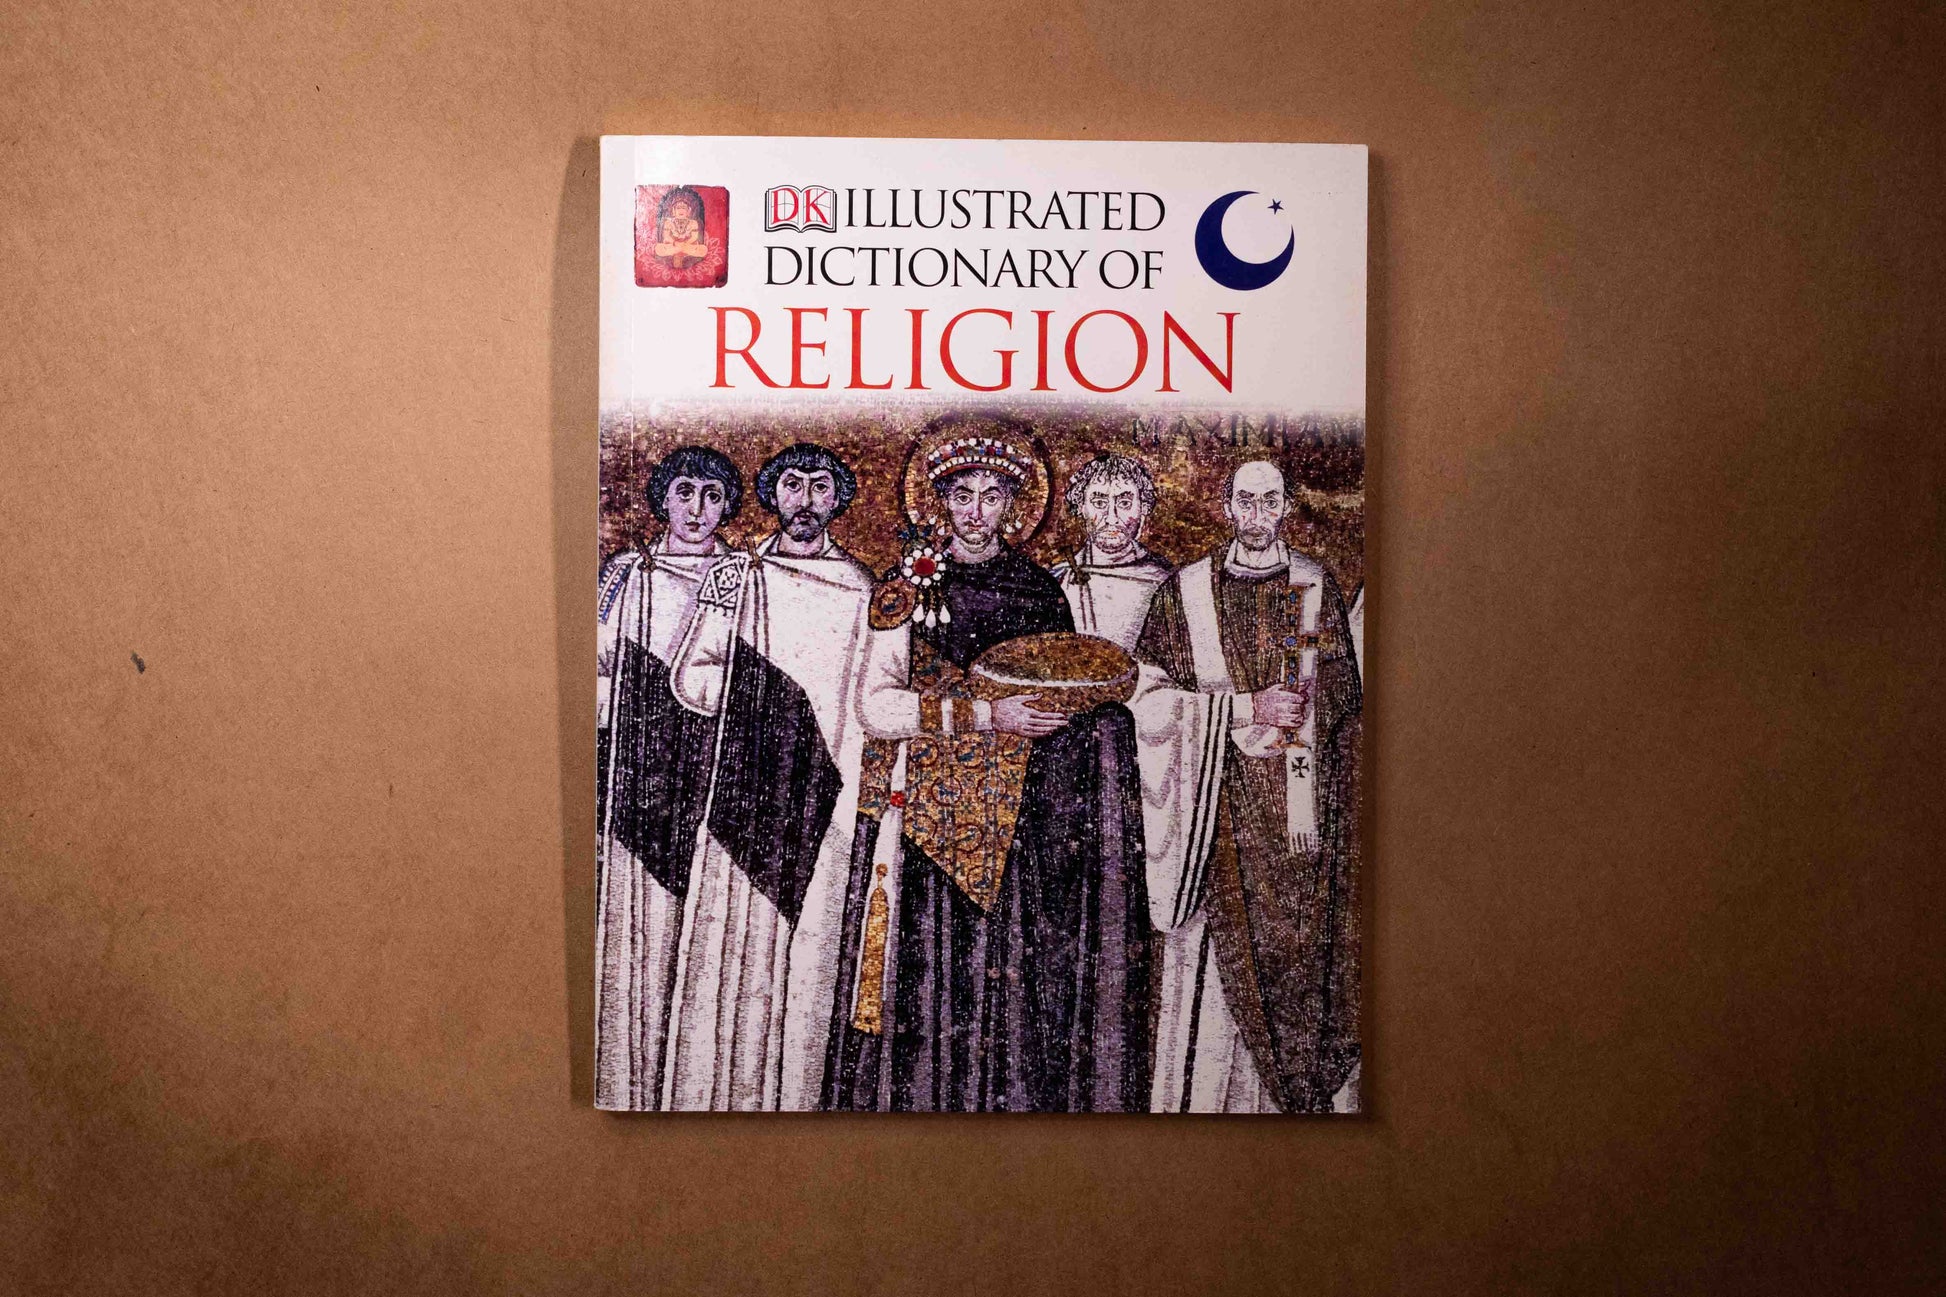 The illustrated dictionary of religion - Mi Spacium Design Studio - 文化研究 Cultural Studies